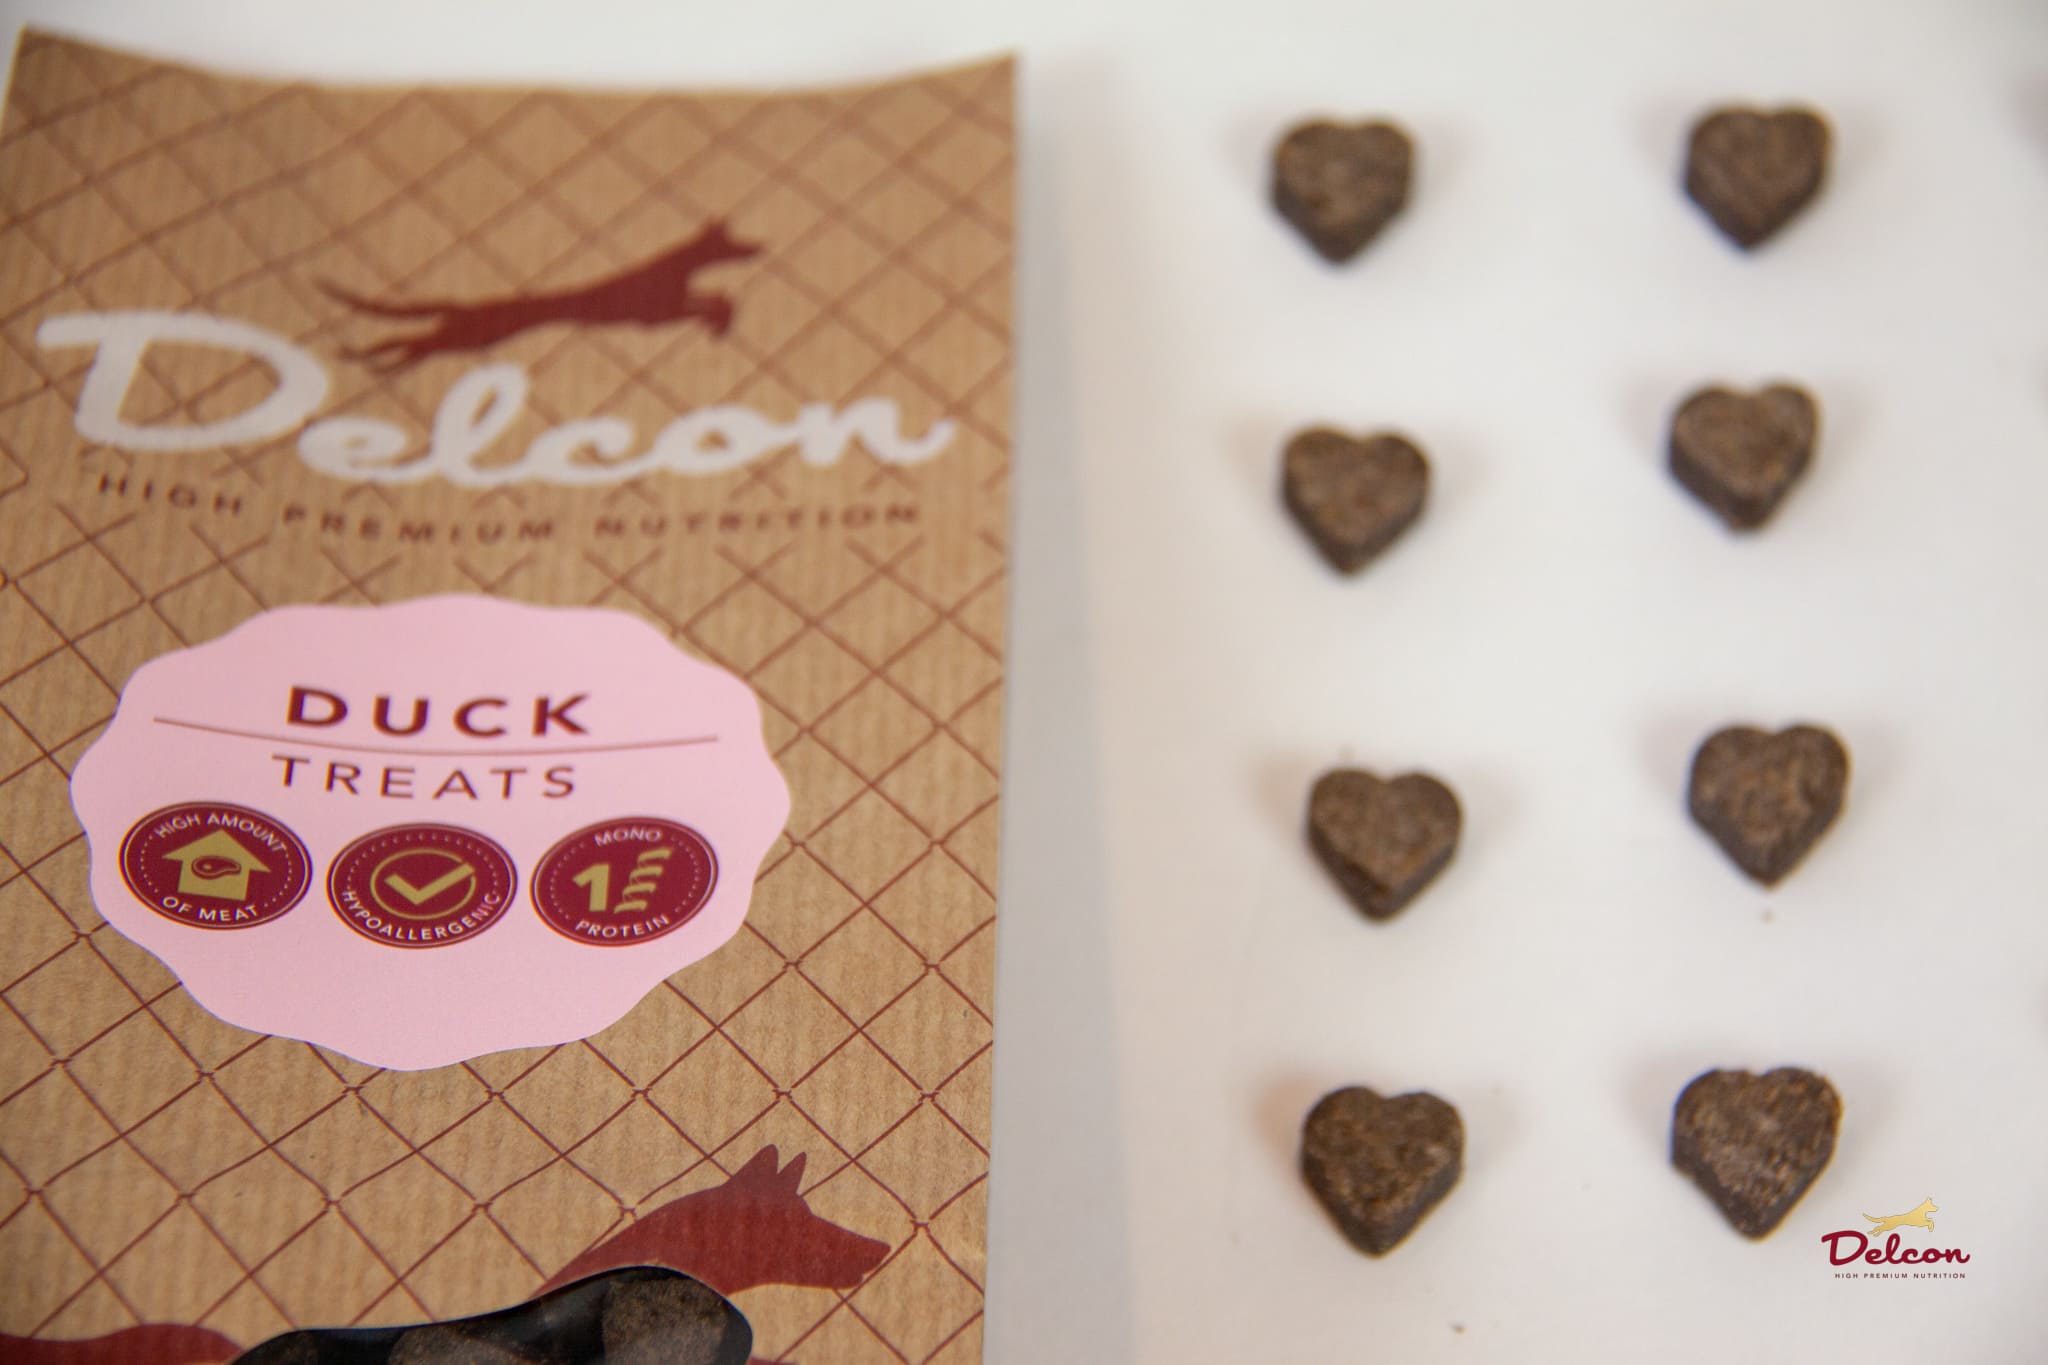  Delcon Premium Duck Treats przysmaki premium z kaczki 150g 